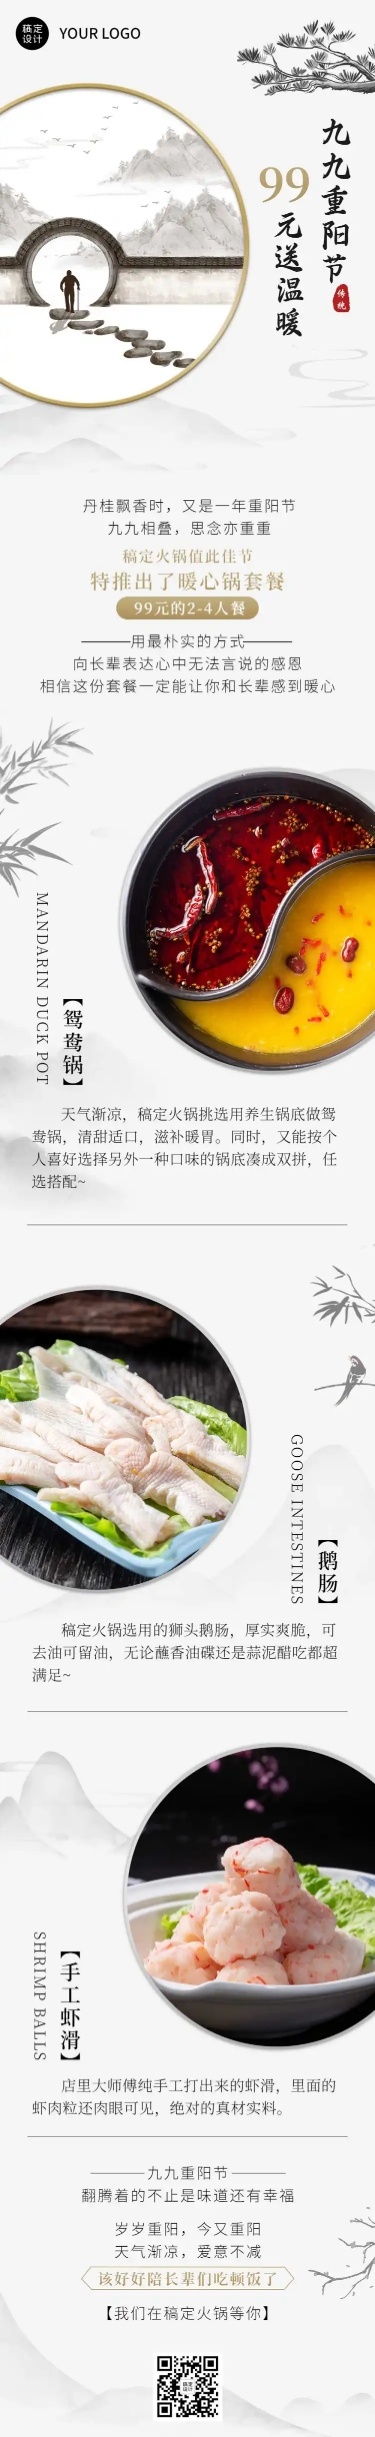 餐饮美食重阳节产品营销中国风文章长图